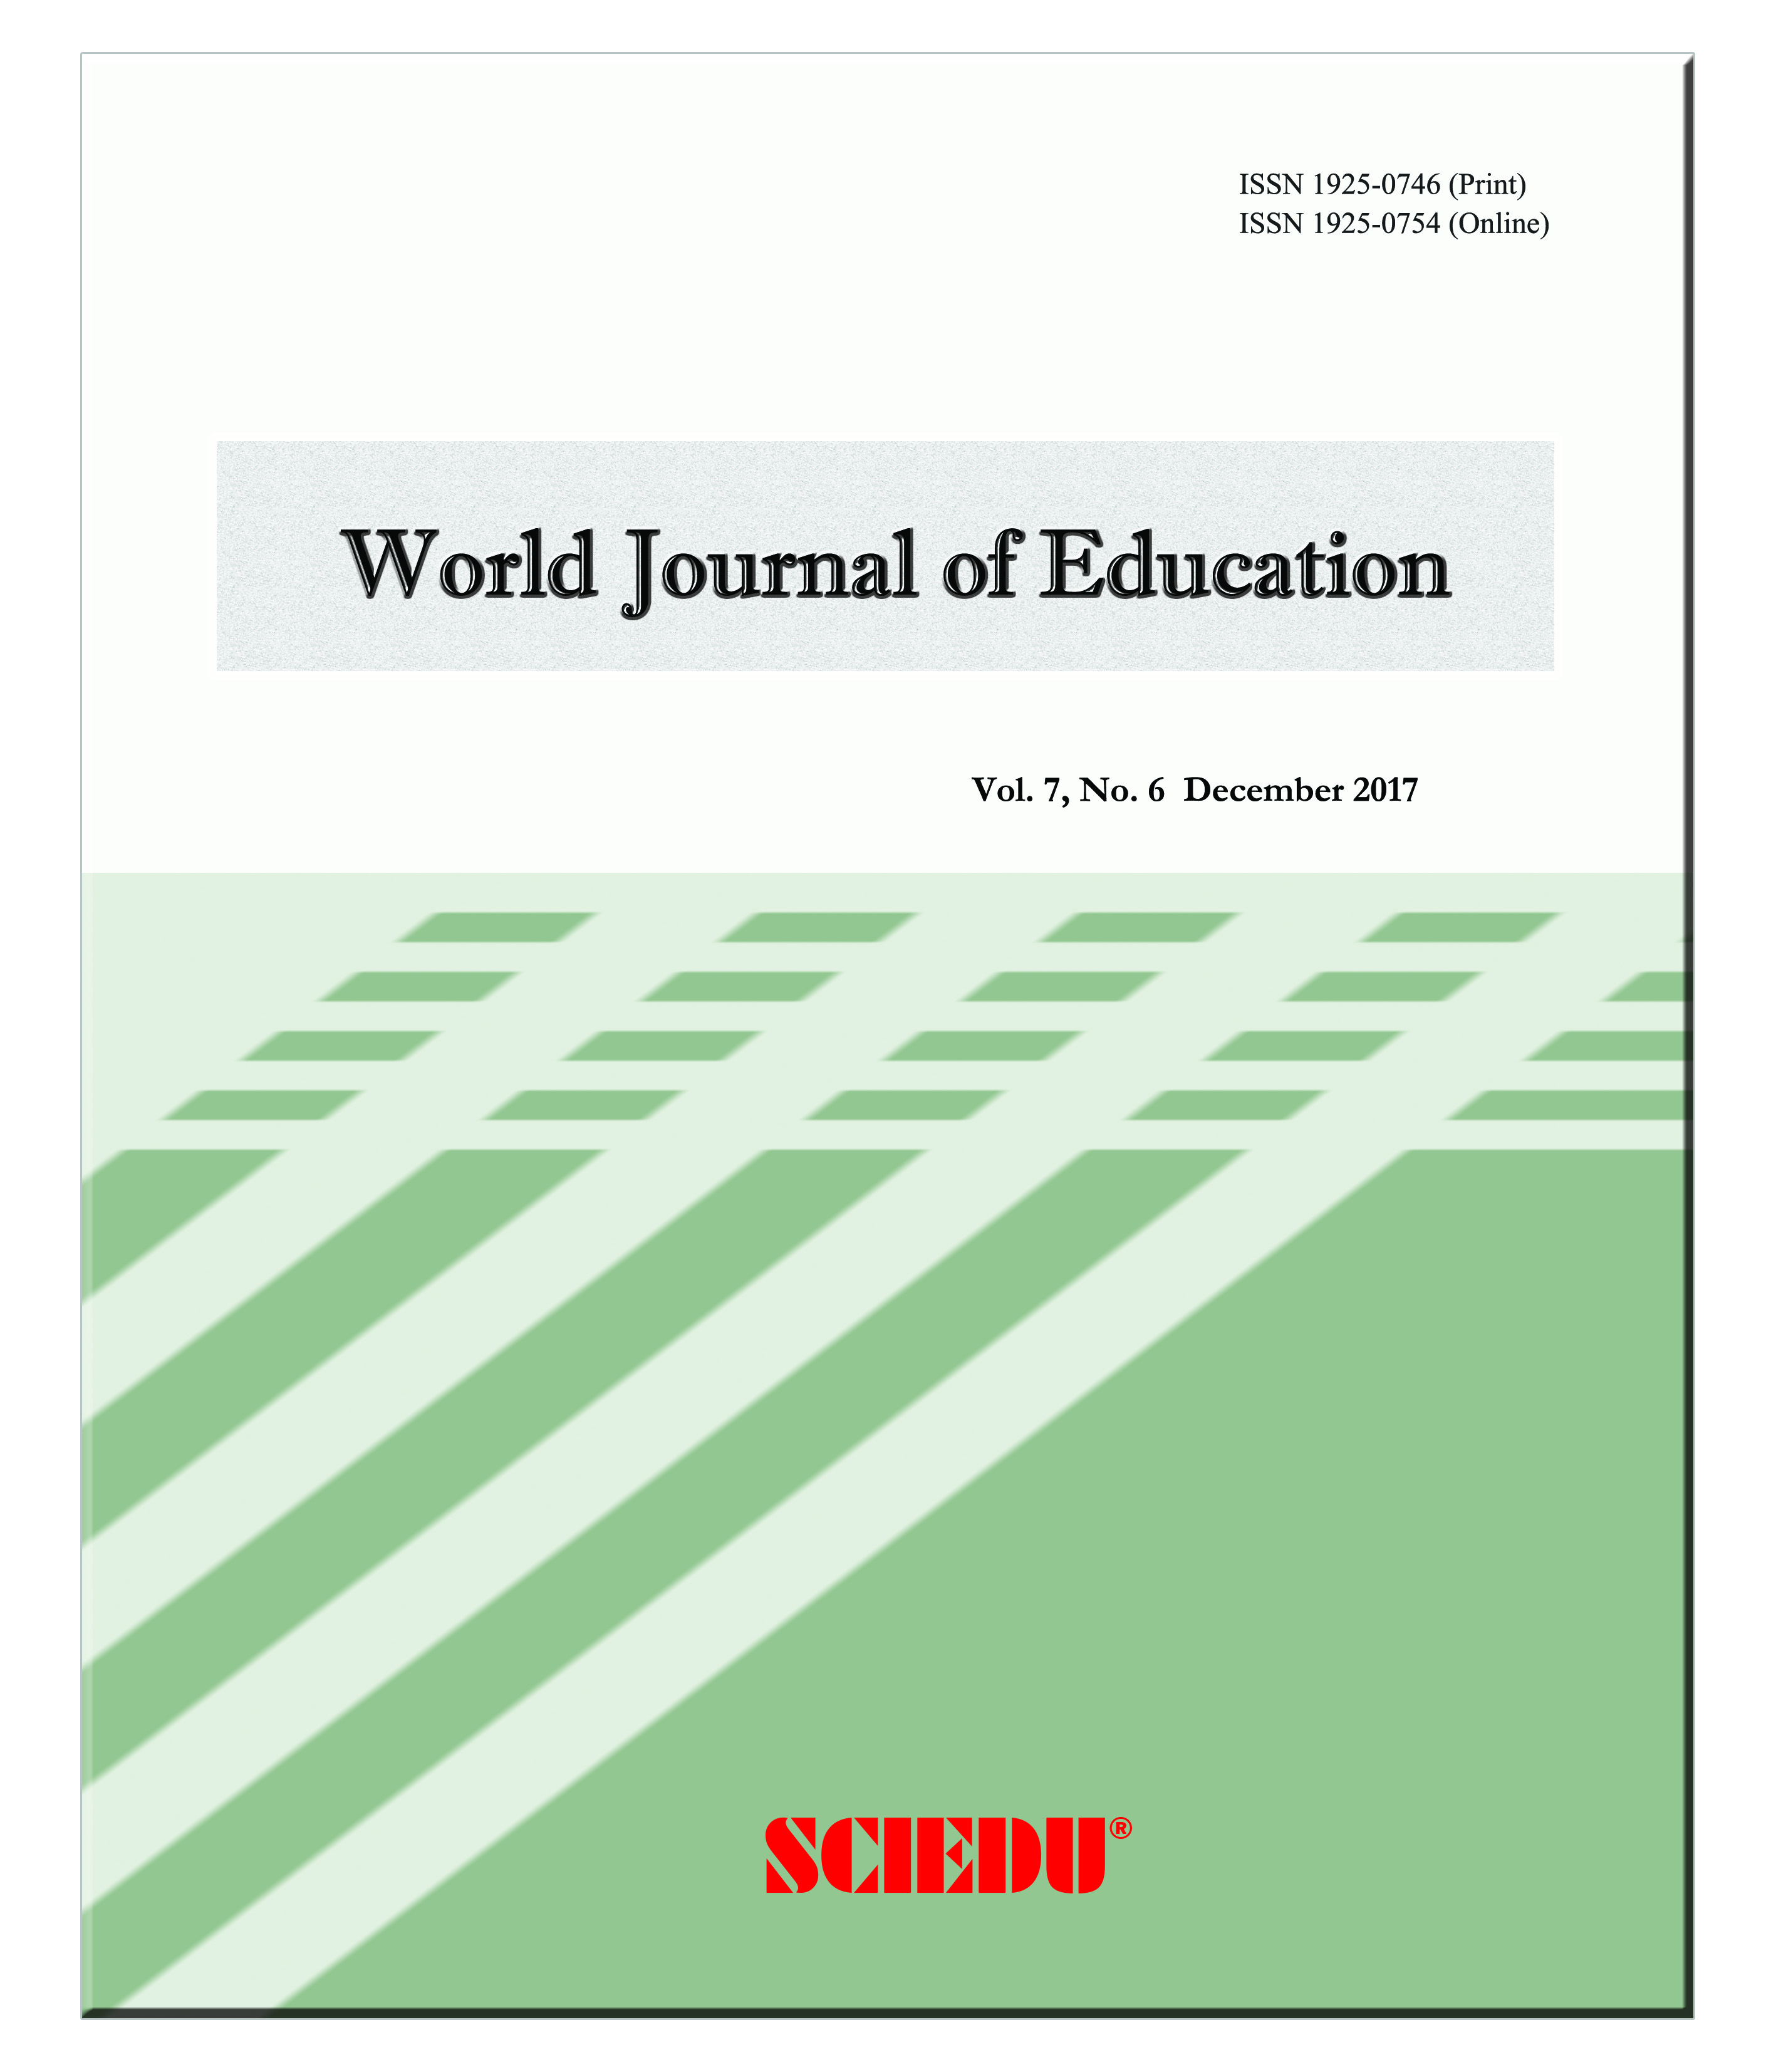 peer reviewed journal in education